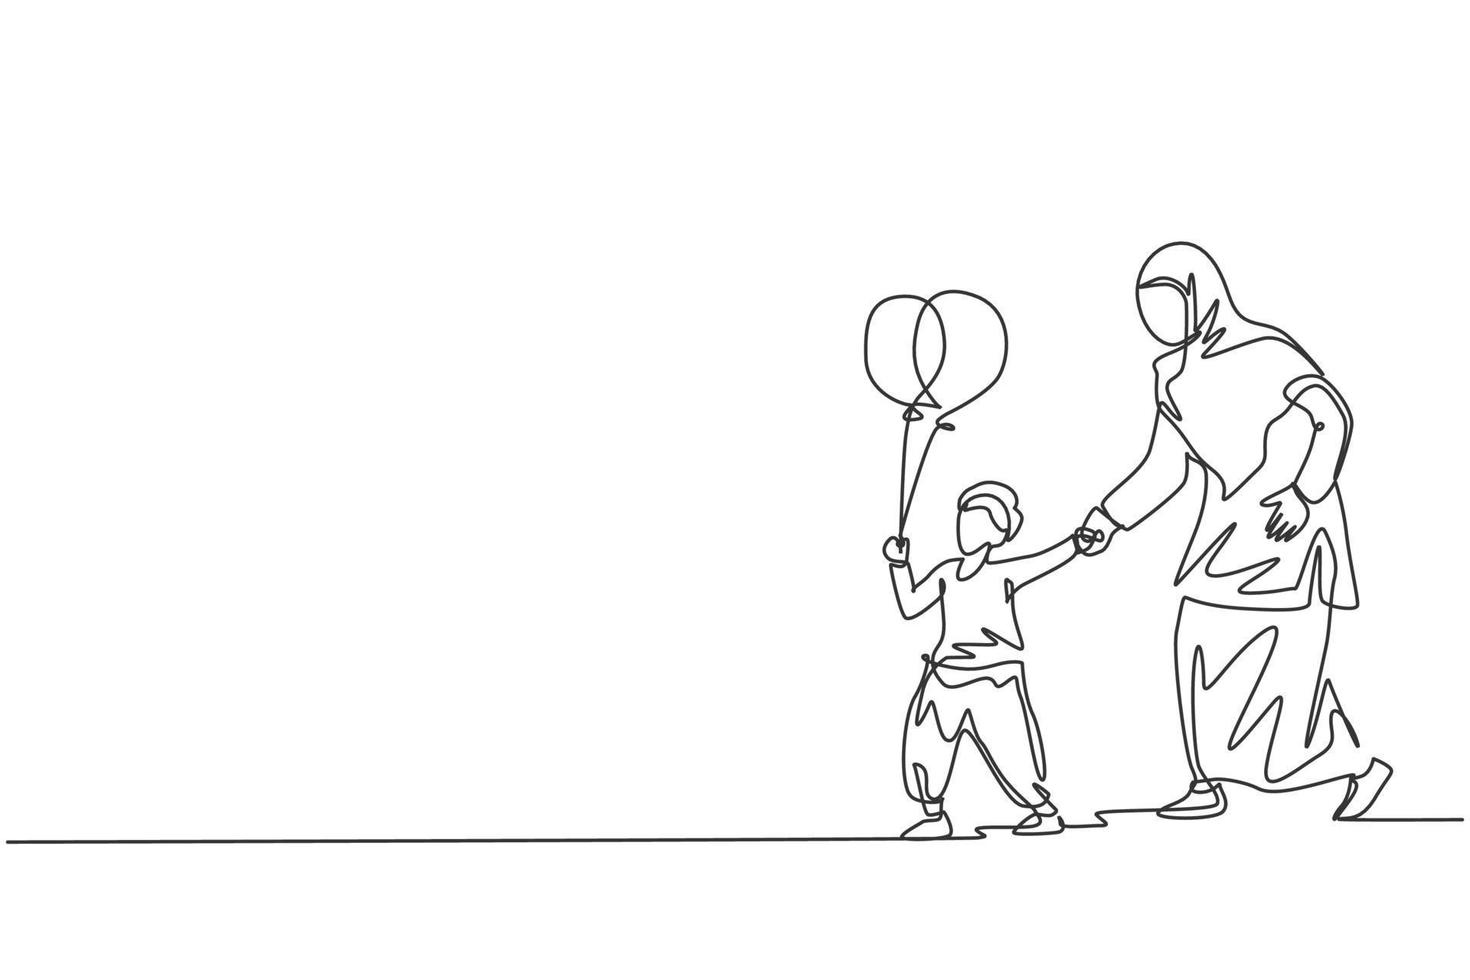 un disegno a tratteggio continuo di giovani madre e figlio islamici che giocano insieme in un parco pubblico all'aperto. felice concetto di famiglia genitorialità musulmana araba. illustrazione vettoriale di disegno dinamico a linea singola